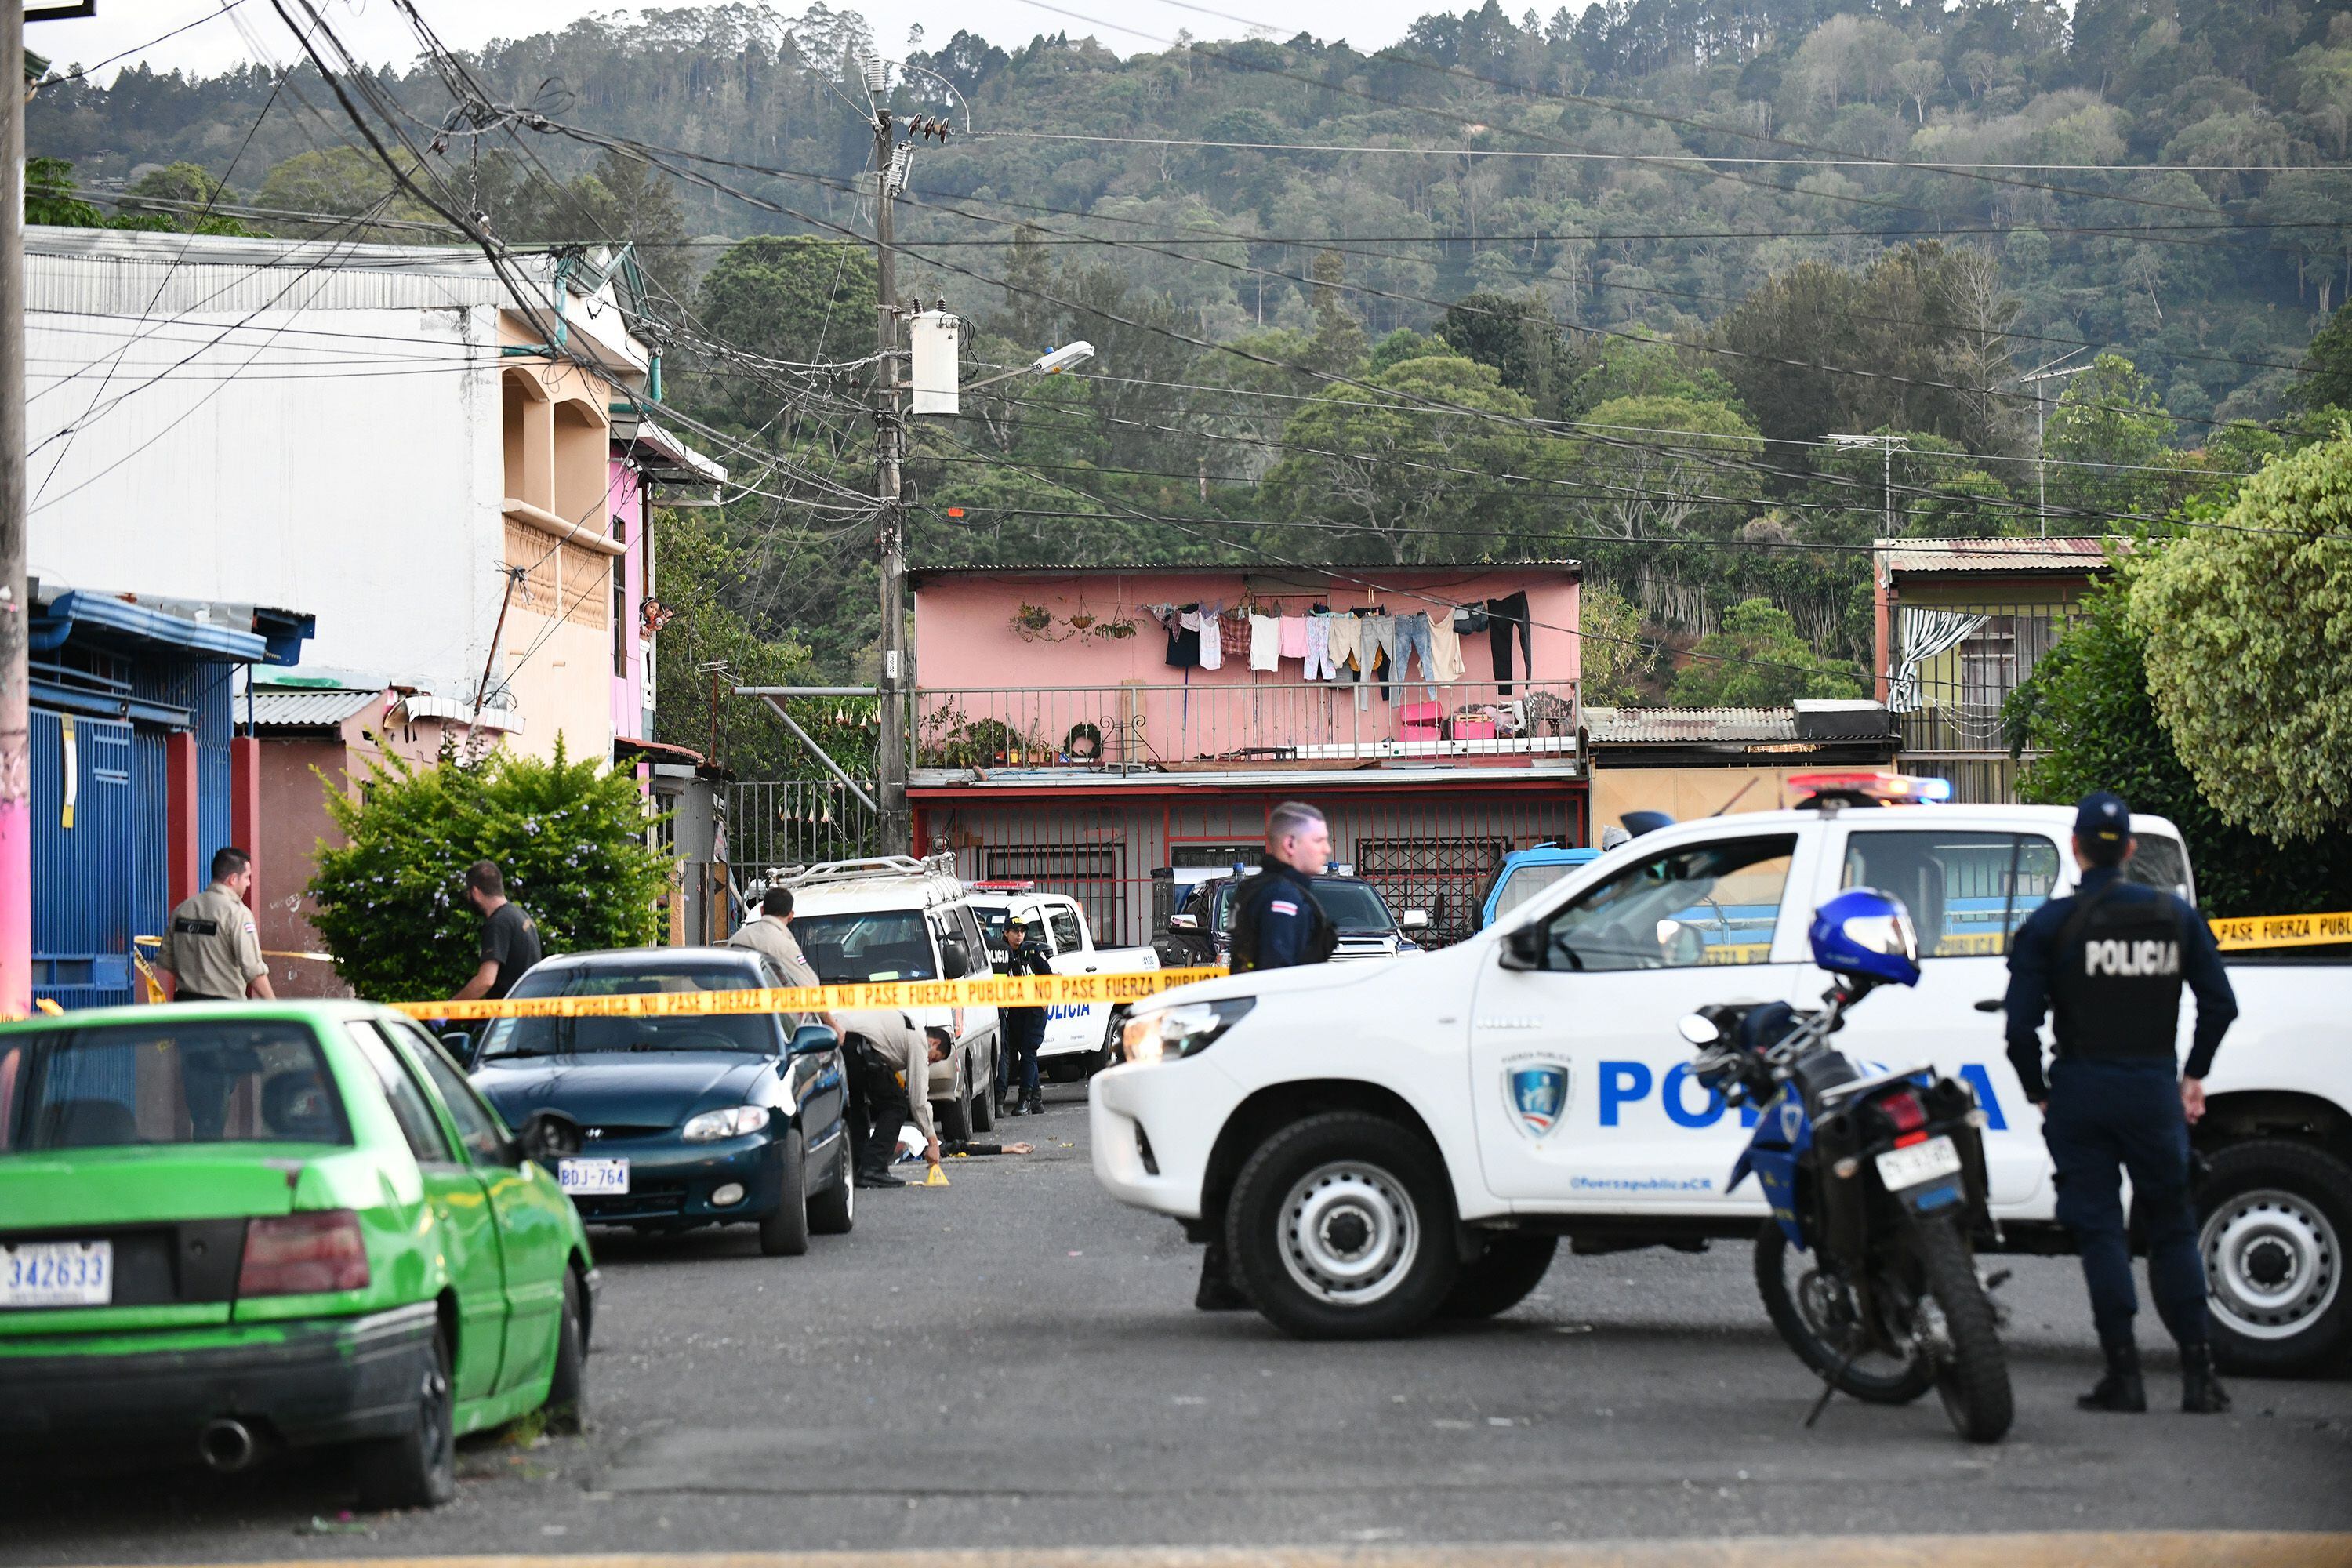 El crimen ocurrió por un conflicto relacionado con drogas. Foto: Jorge Castillo.